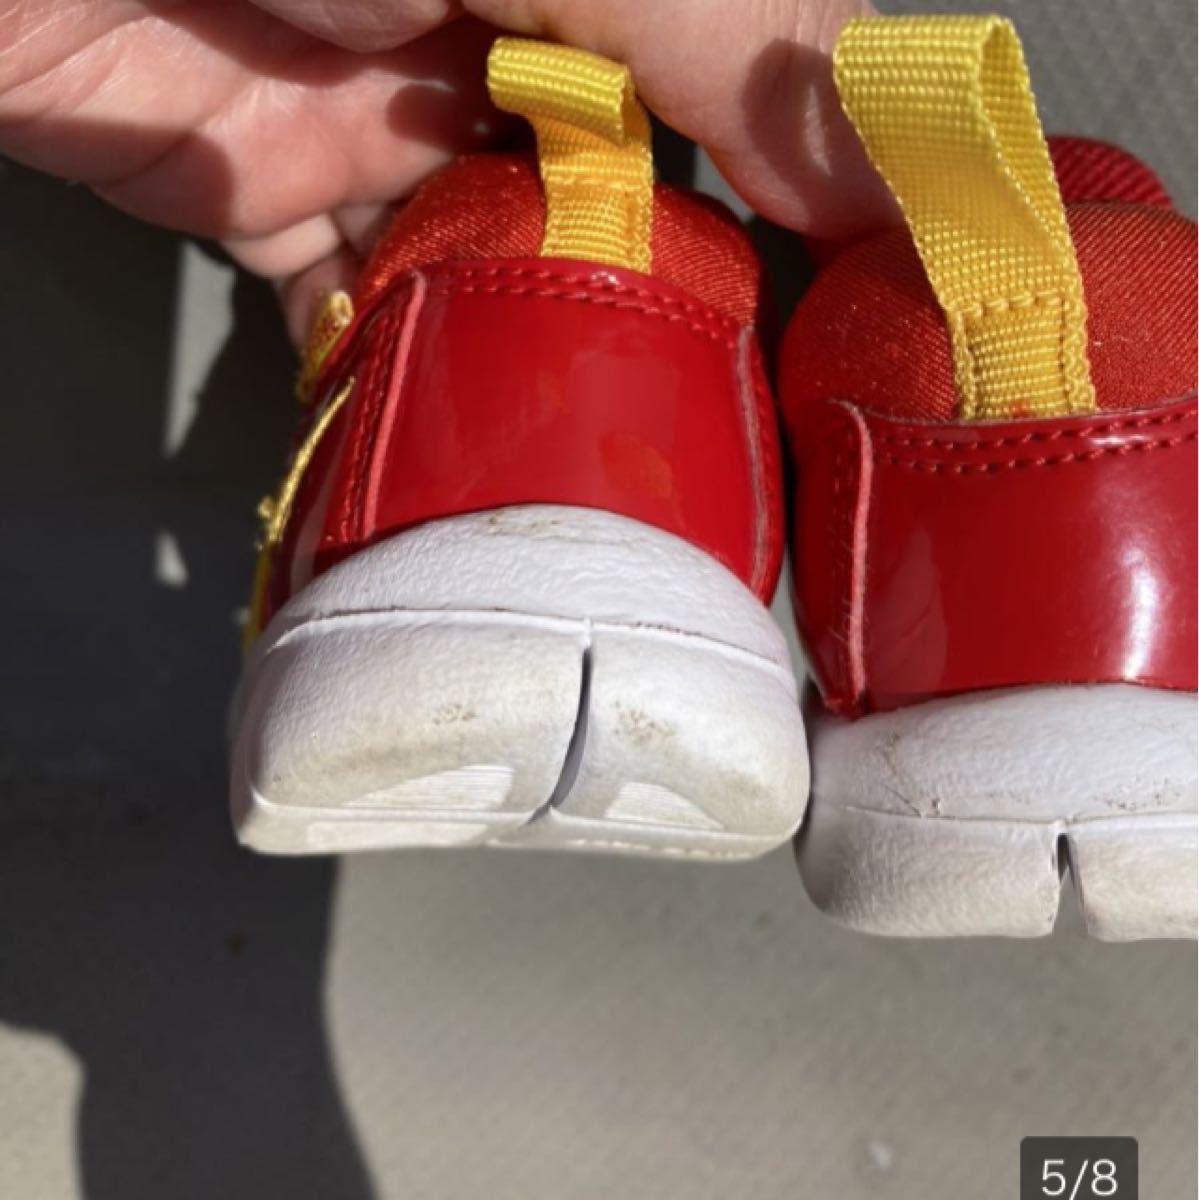 ナイキ　スニーカー ダイナモフリー　11cmシューズ　子供靴　赤黄色